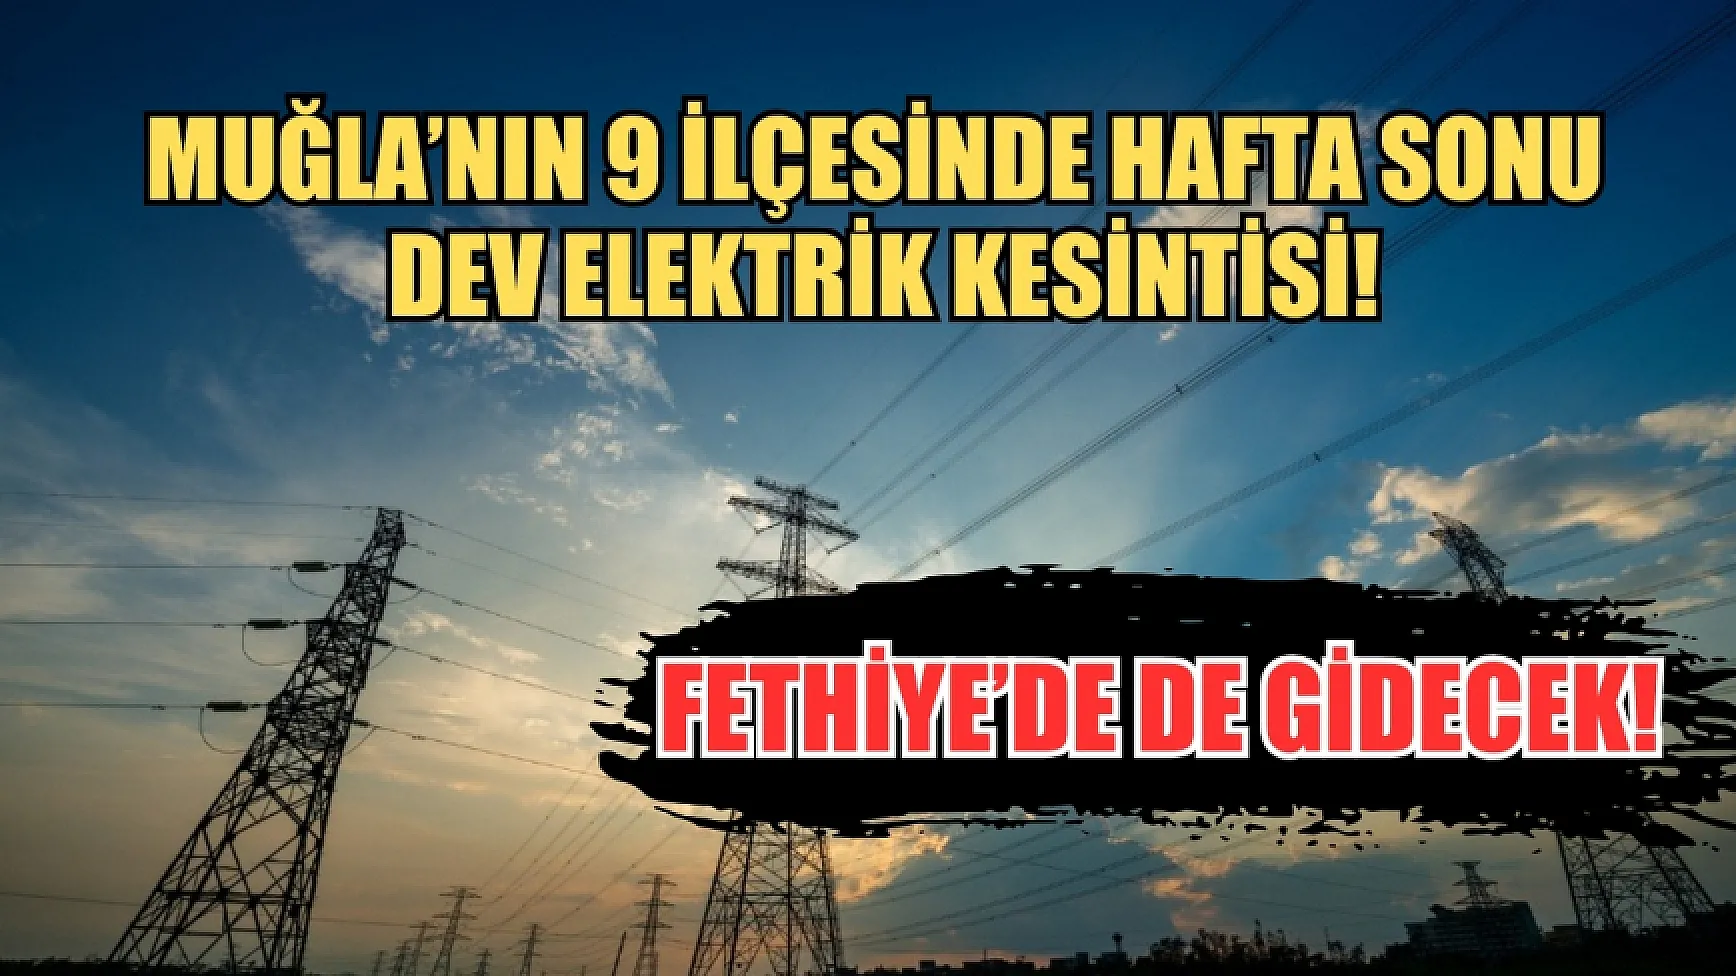 Muğla’nın 9 ilçesinde hafta sonu dev elektrik kesintisi! Fethiye’de de gidecek! 27-28 Nisan elektrik kesintisi detaylar..